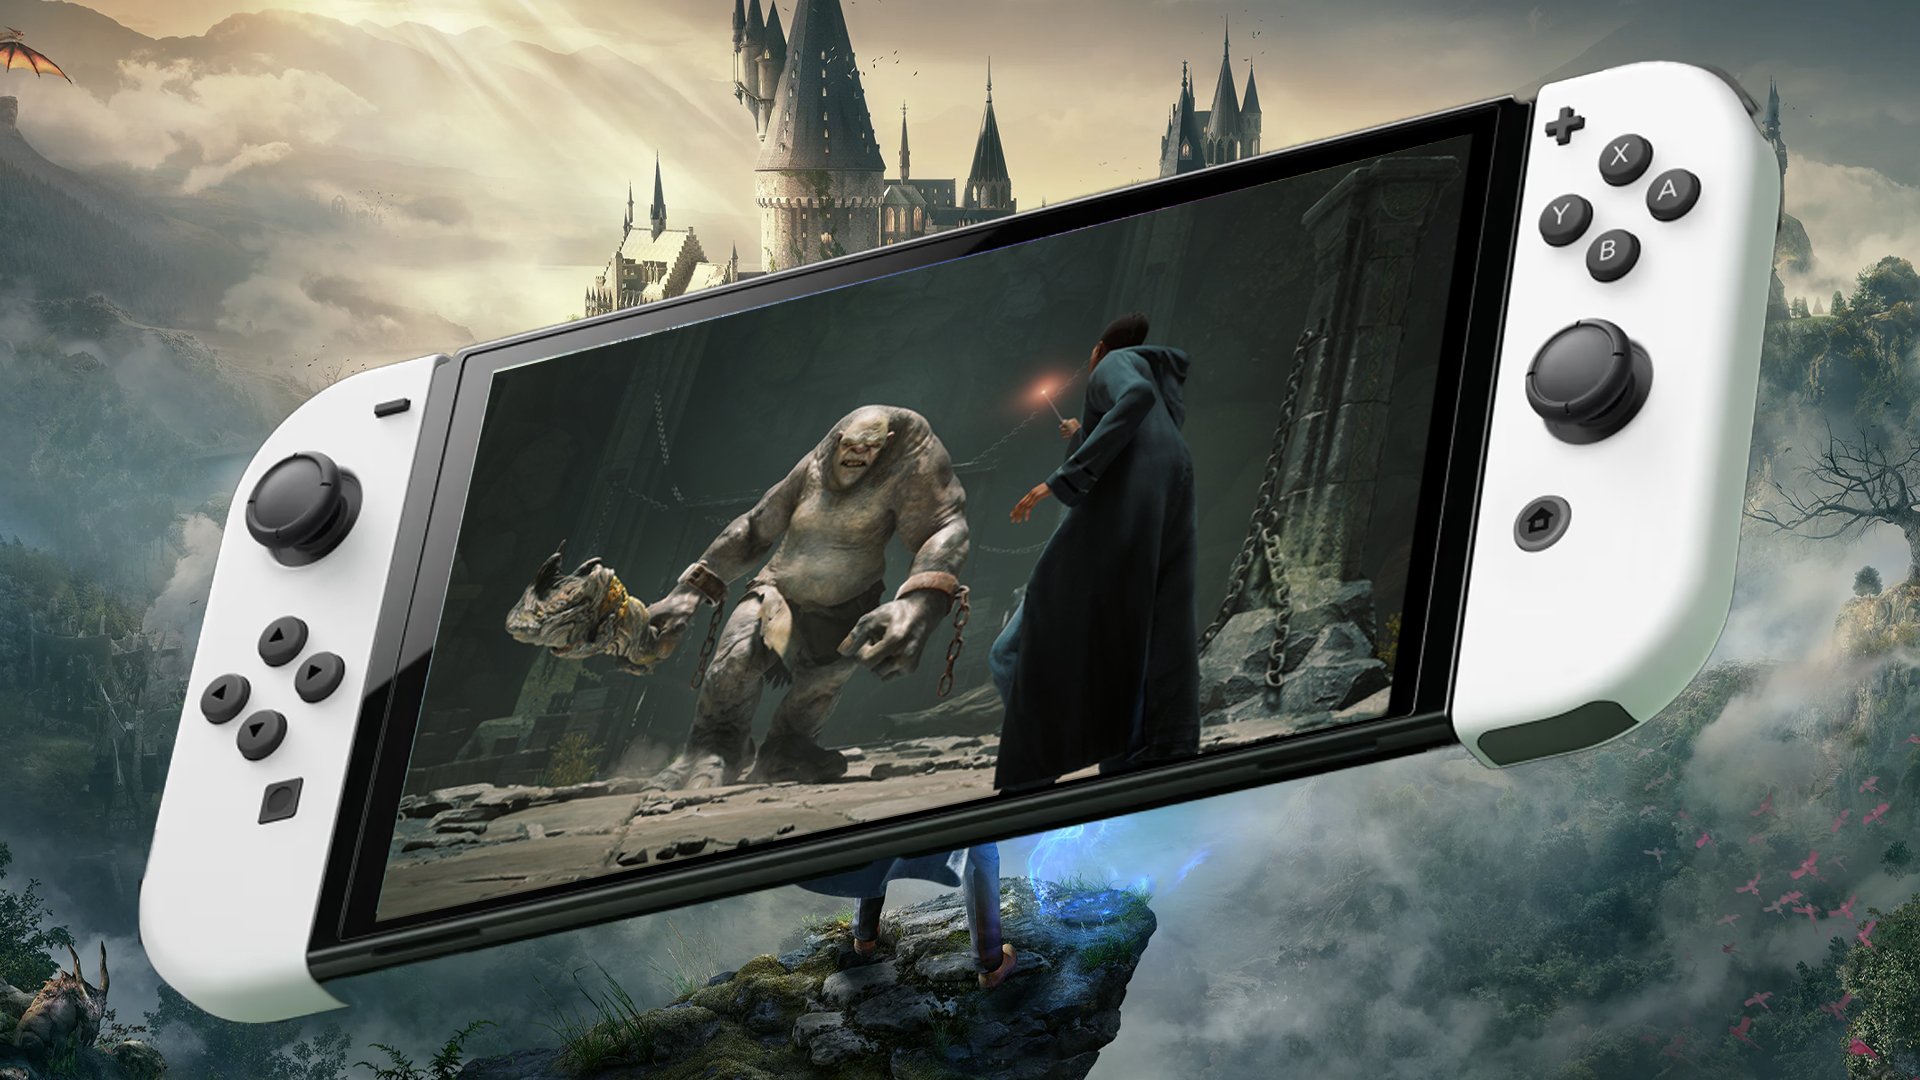 Hogwarts Legacy ganha data de lançamento no Nintendo Switch